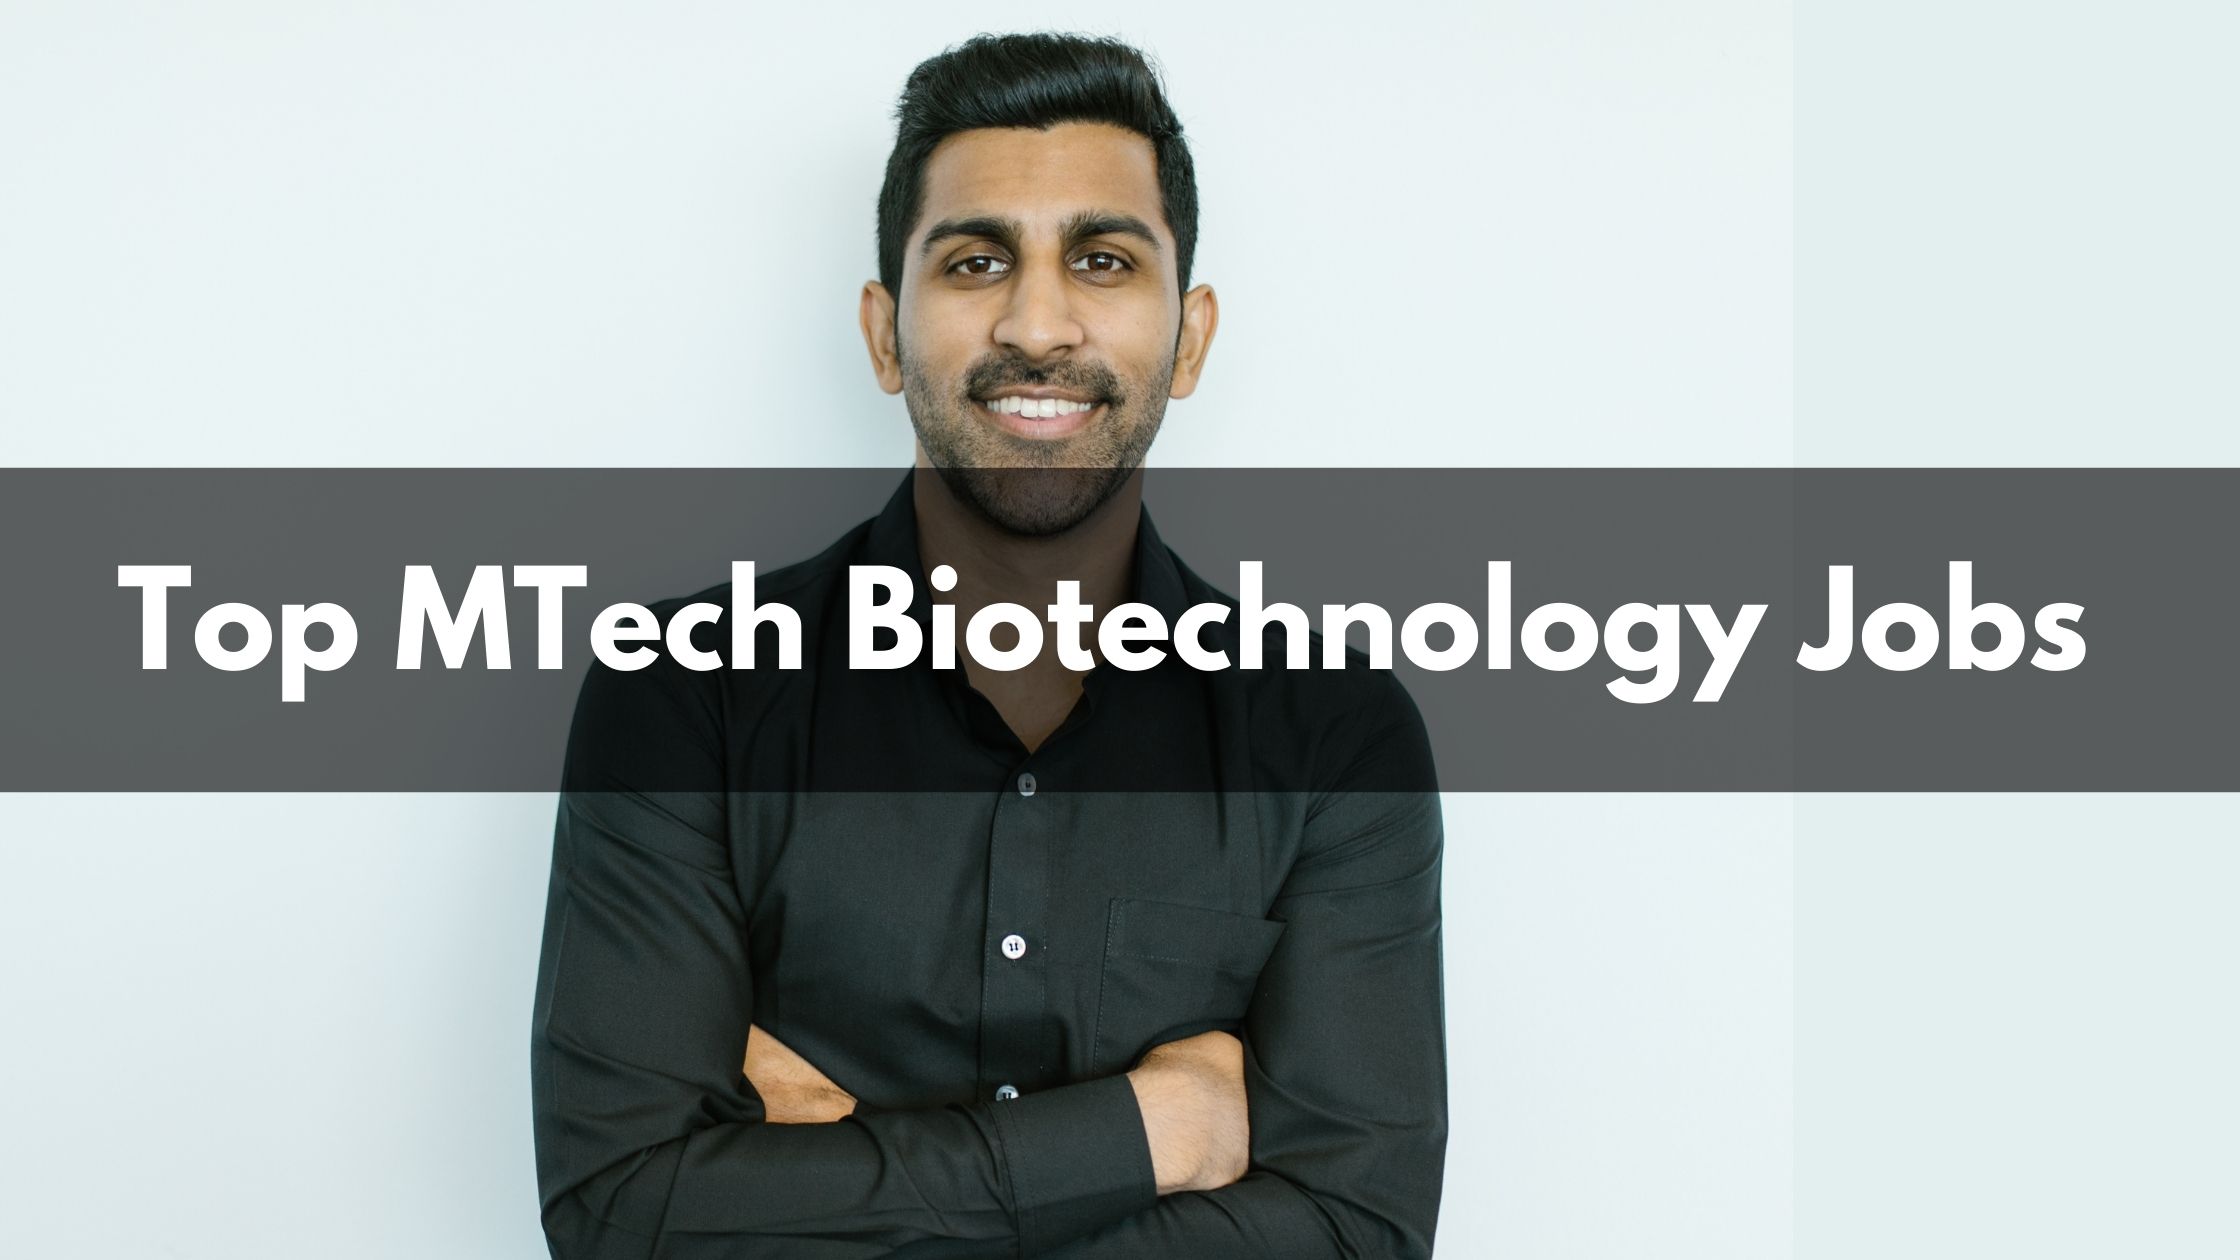 MTech Biotechnology Jobs